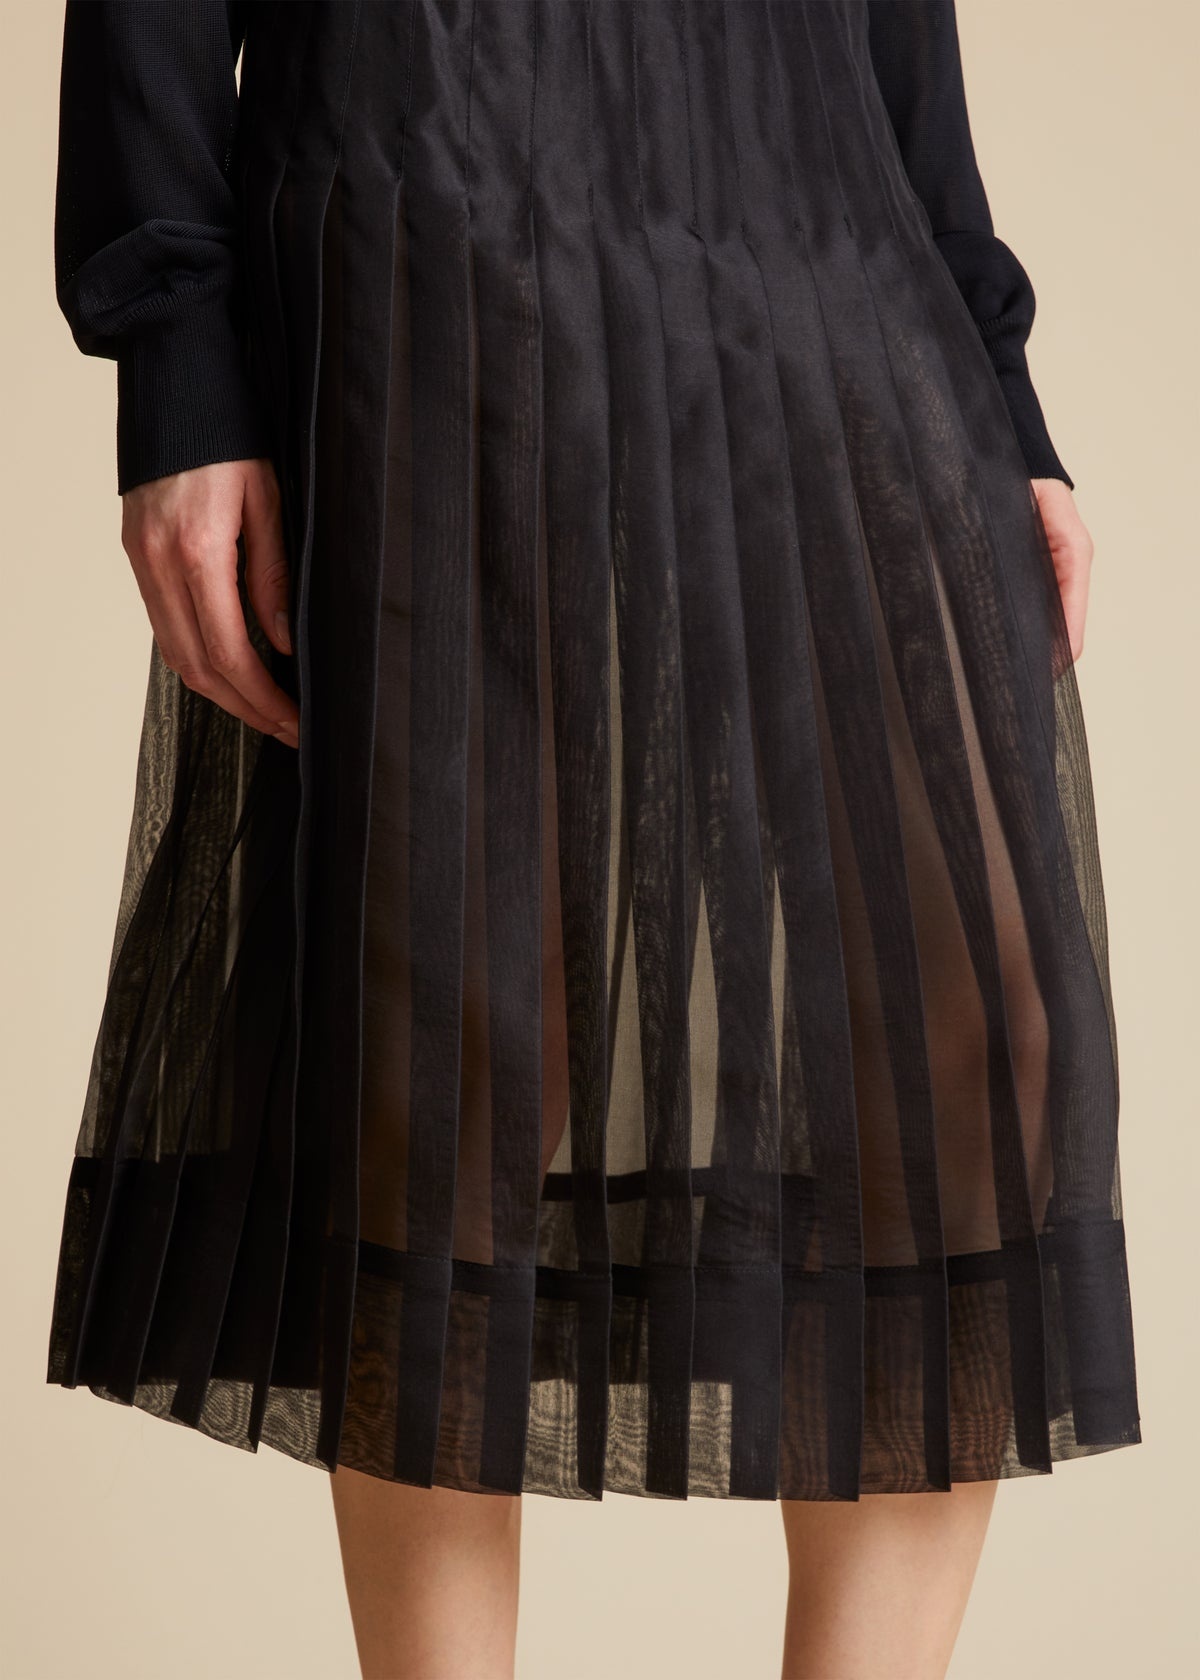 The Tudi Skirt in Black - 4